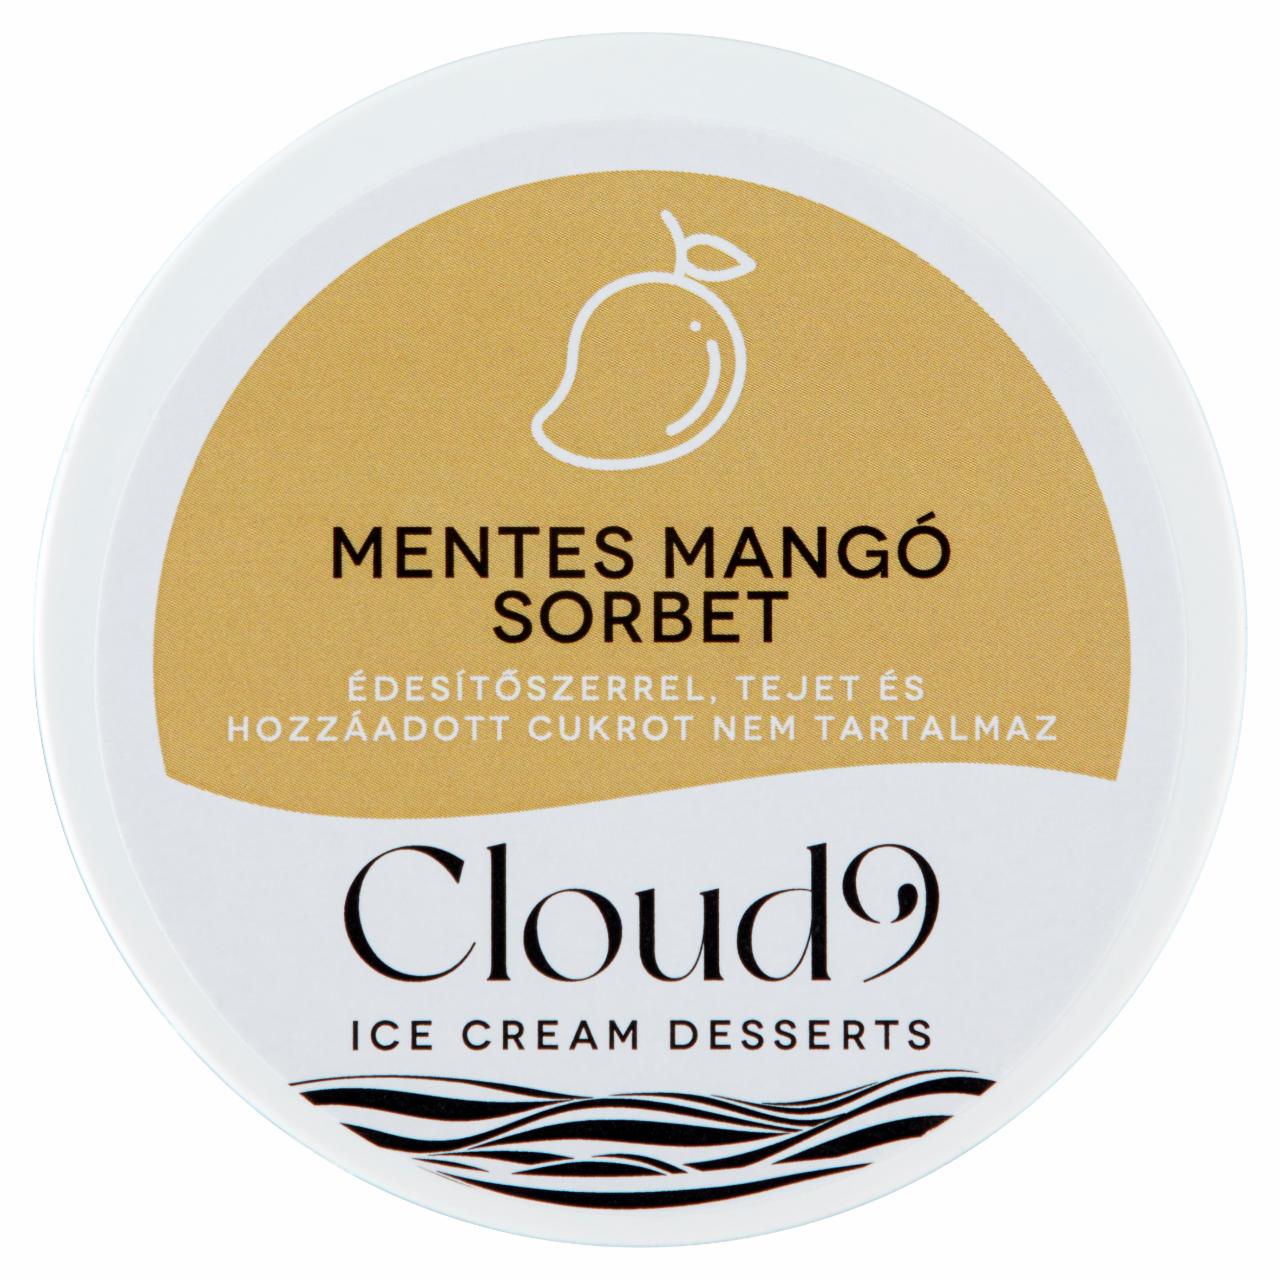 Képek - Cloud 9 mentes mangó sorbet édesítőszerrel 240 ml